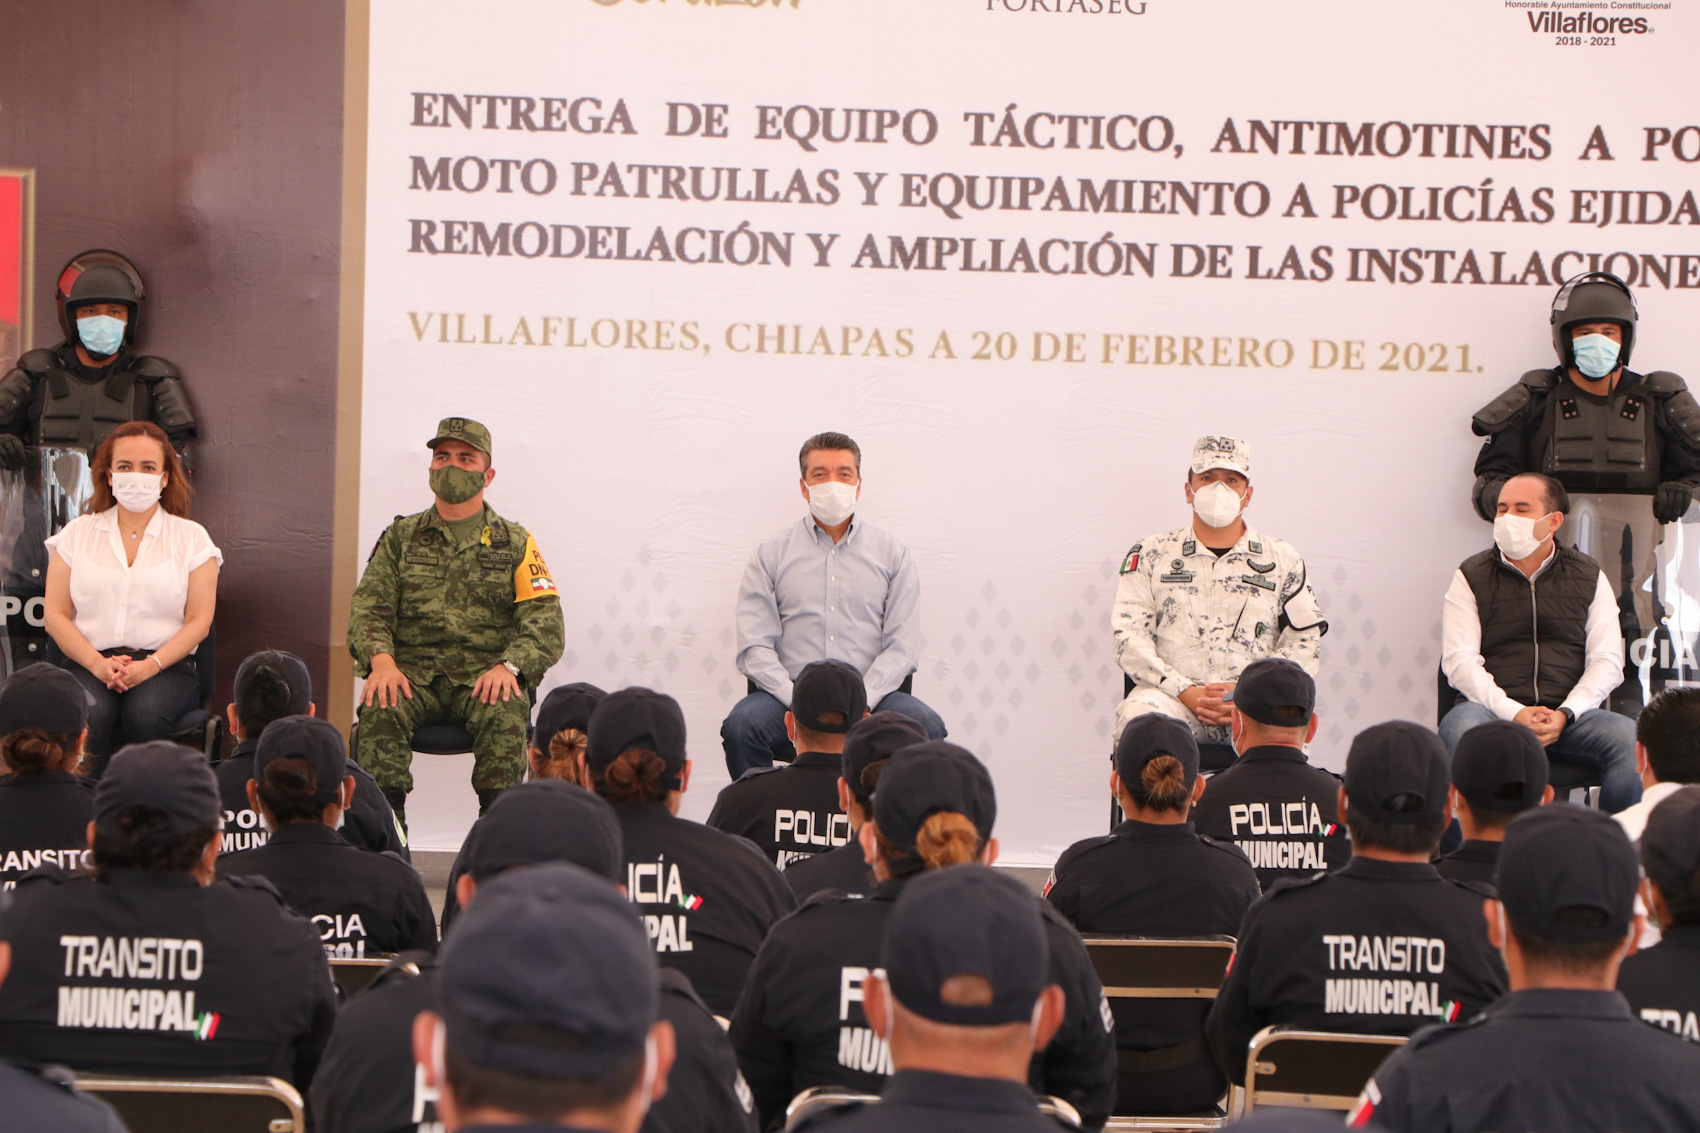 Entregan 30 motopatrullas, uniformes y equipamiento a policías de Villaflores